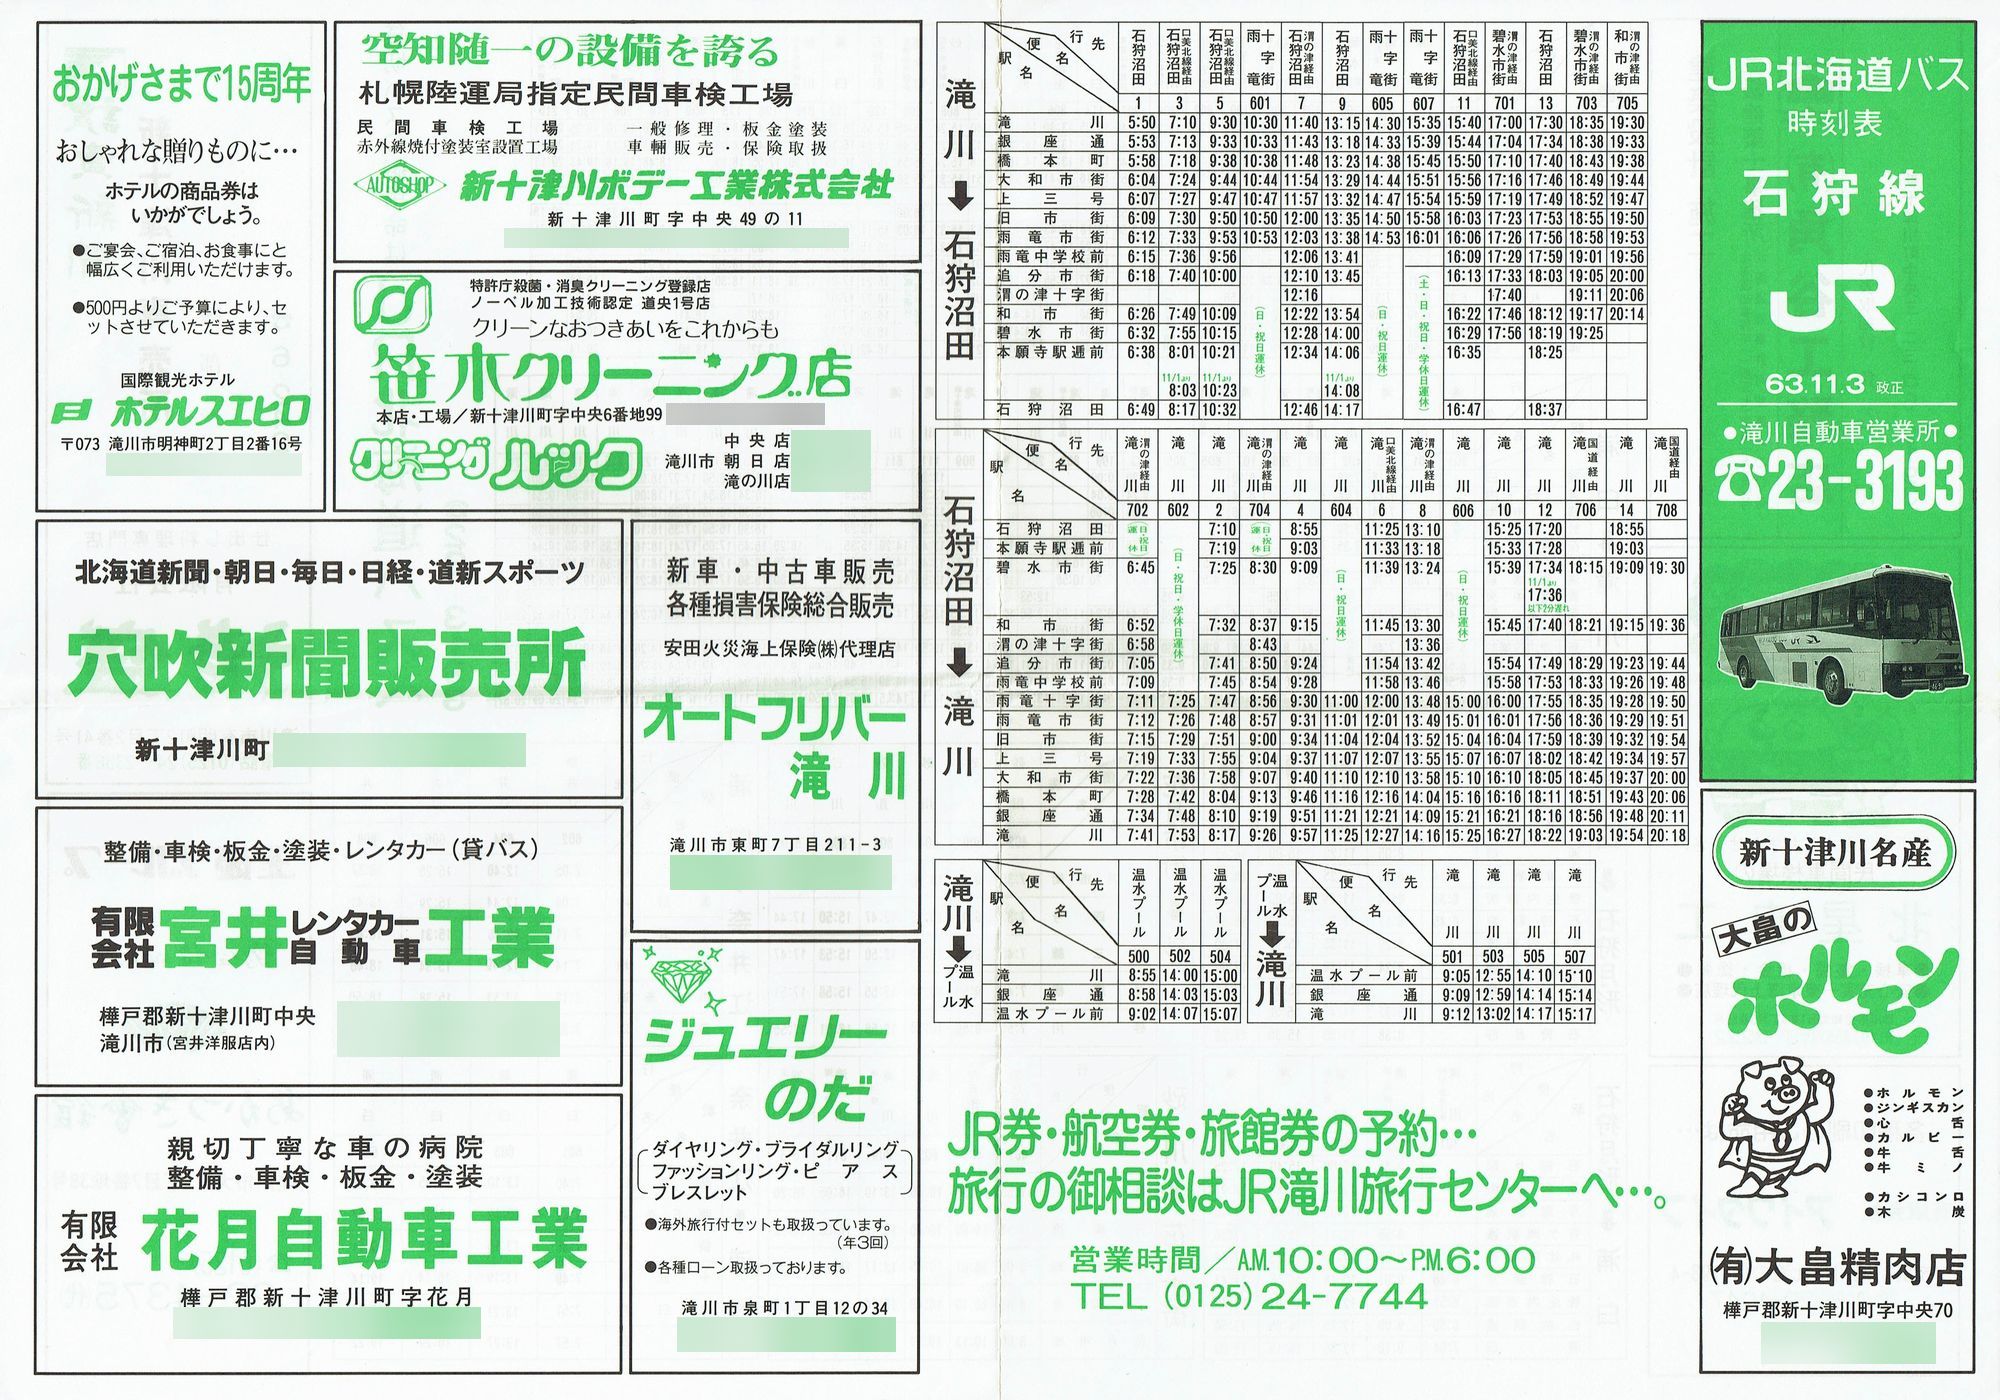 1988-11-03改正_ＪＲ北海道バス_石狩線時刻表表面